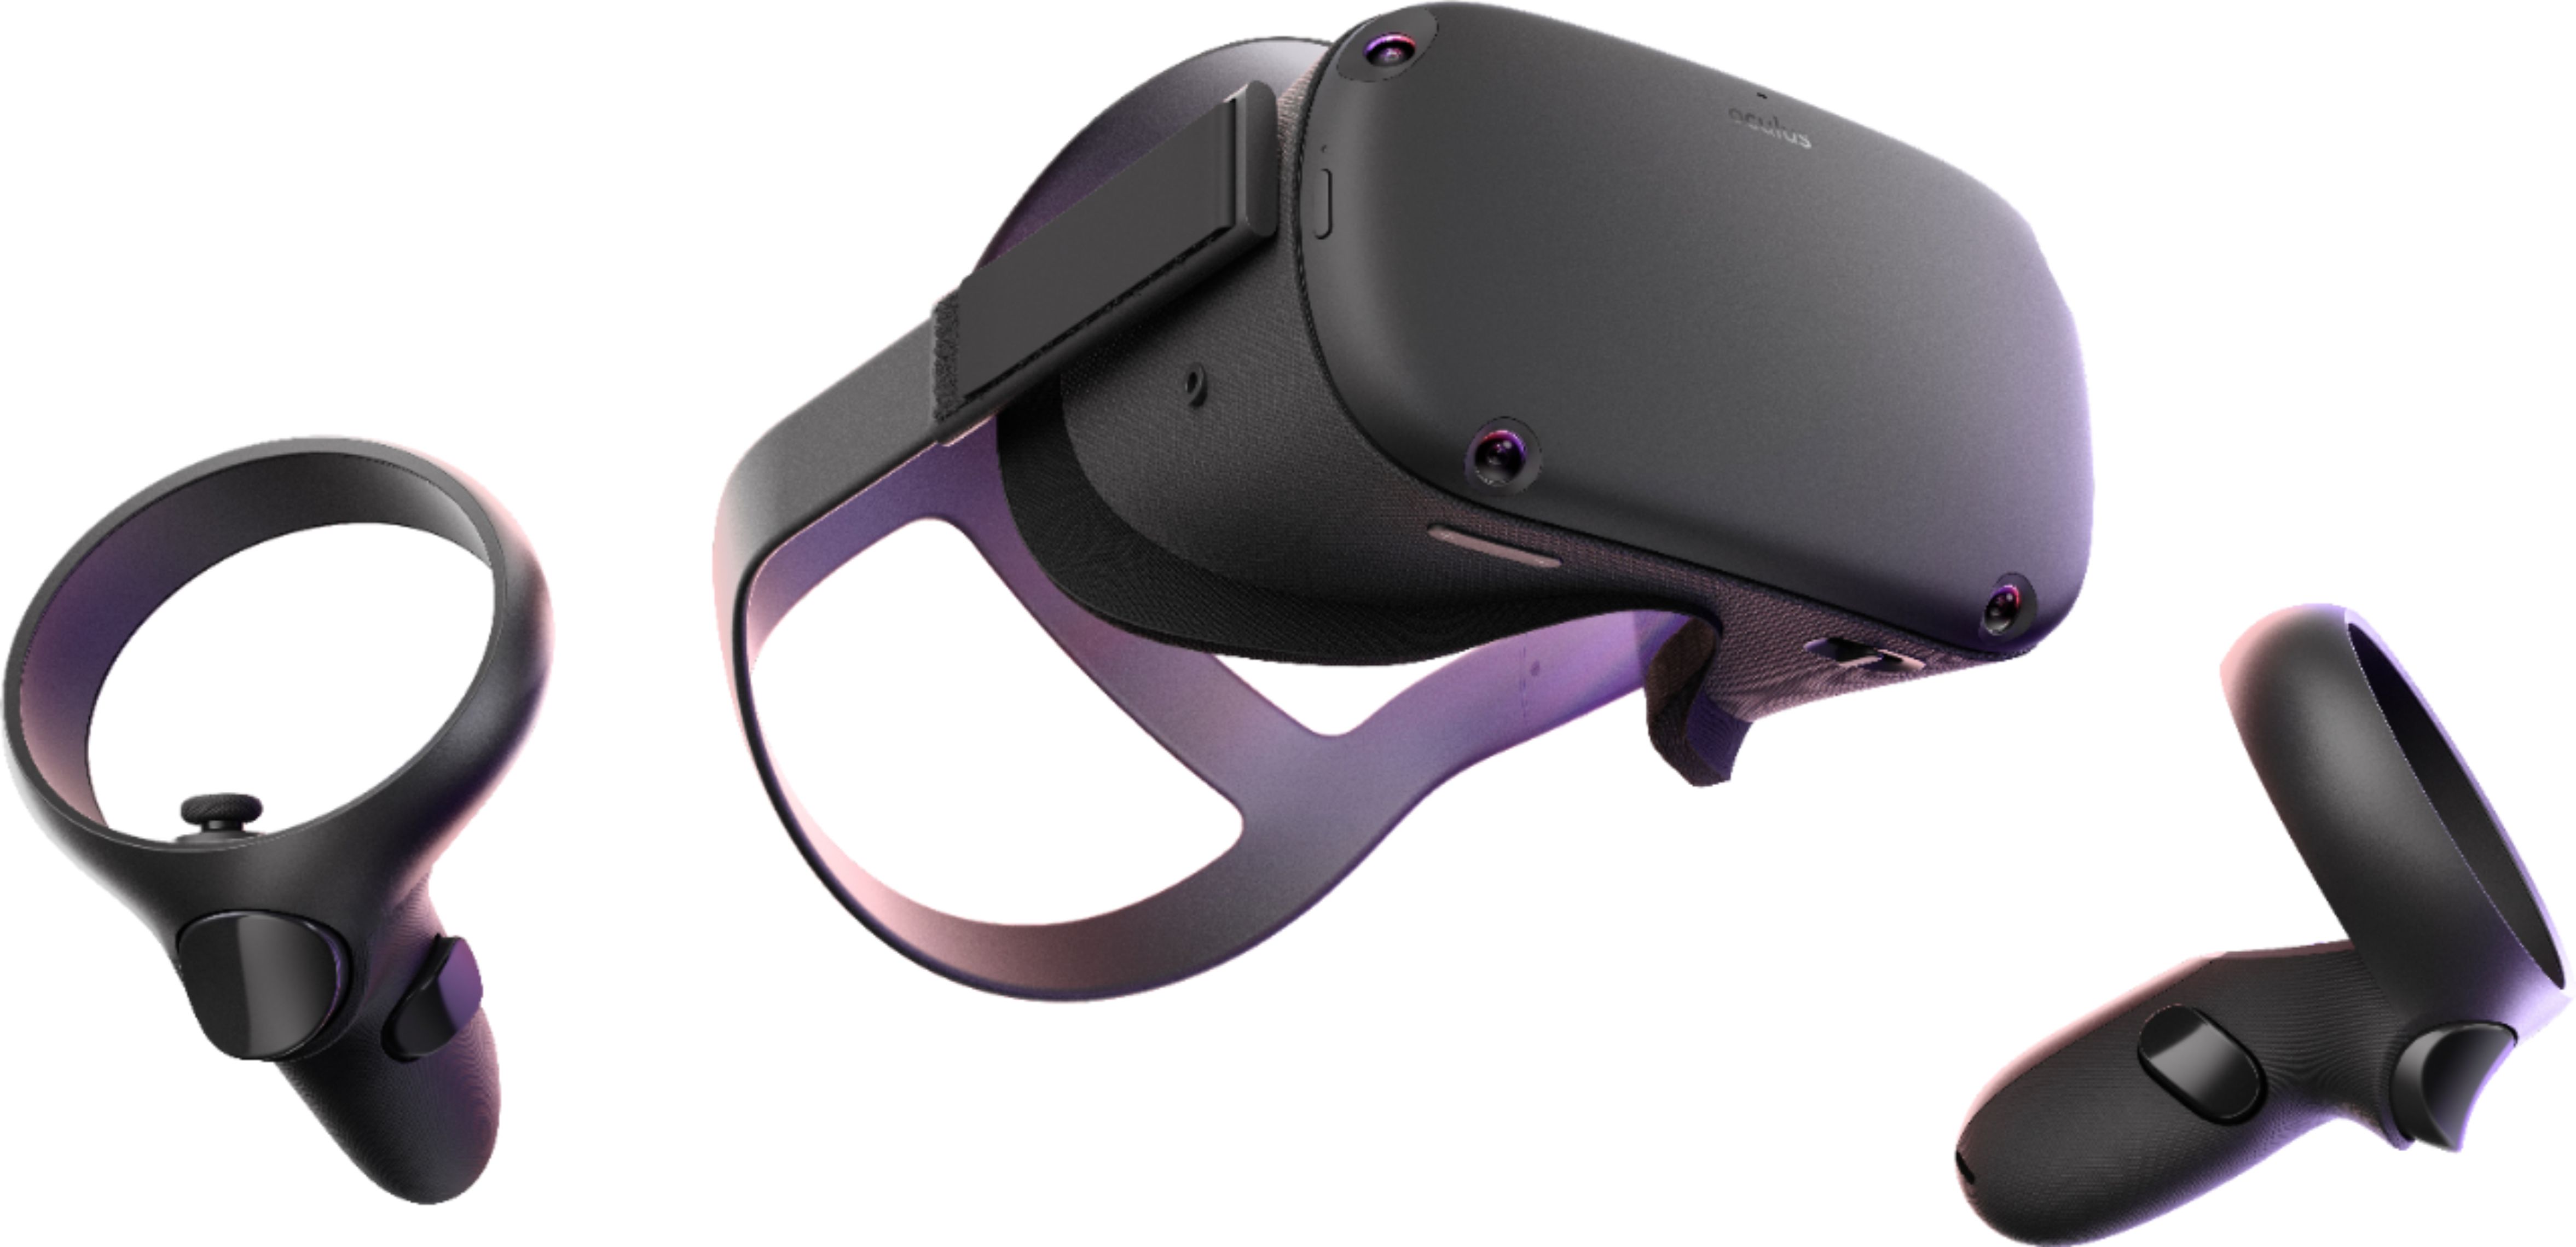 oculus standalone virtual reality headset